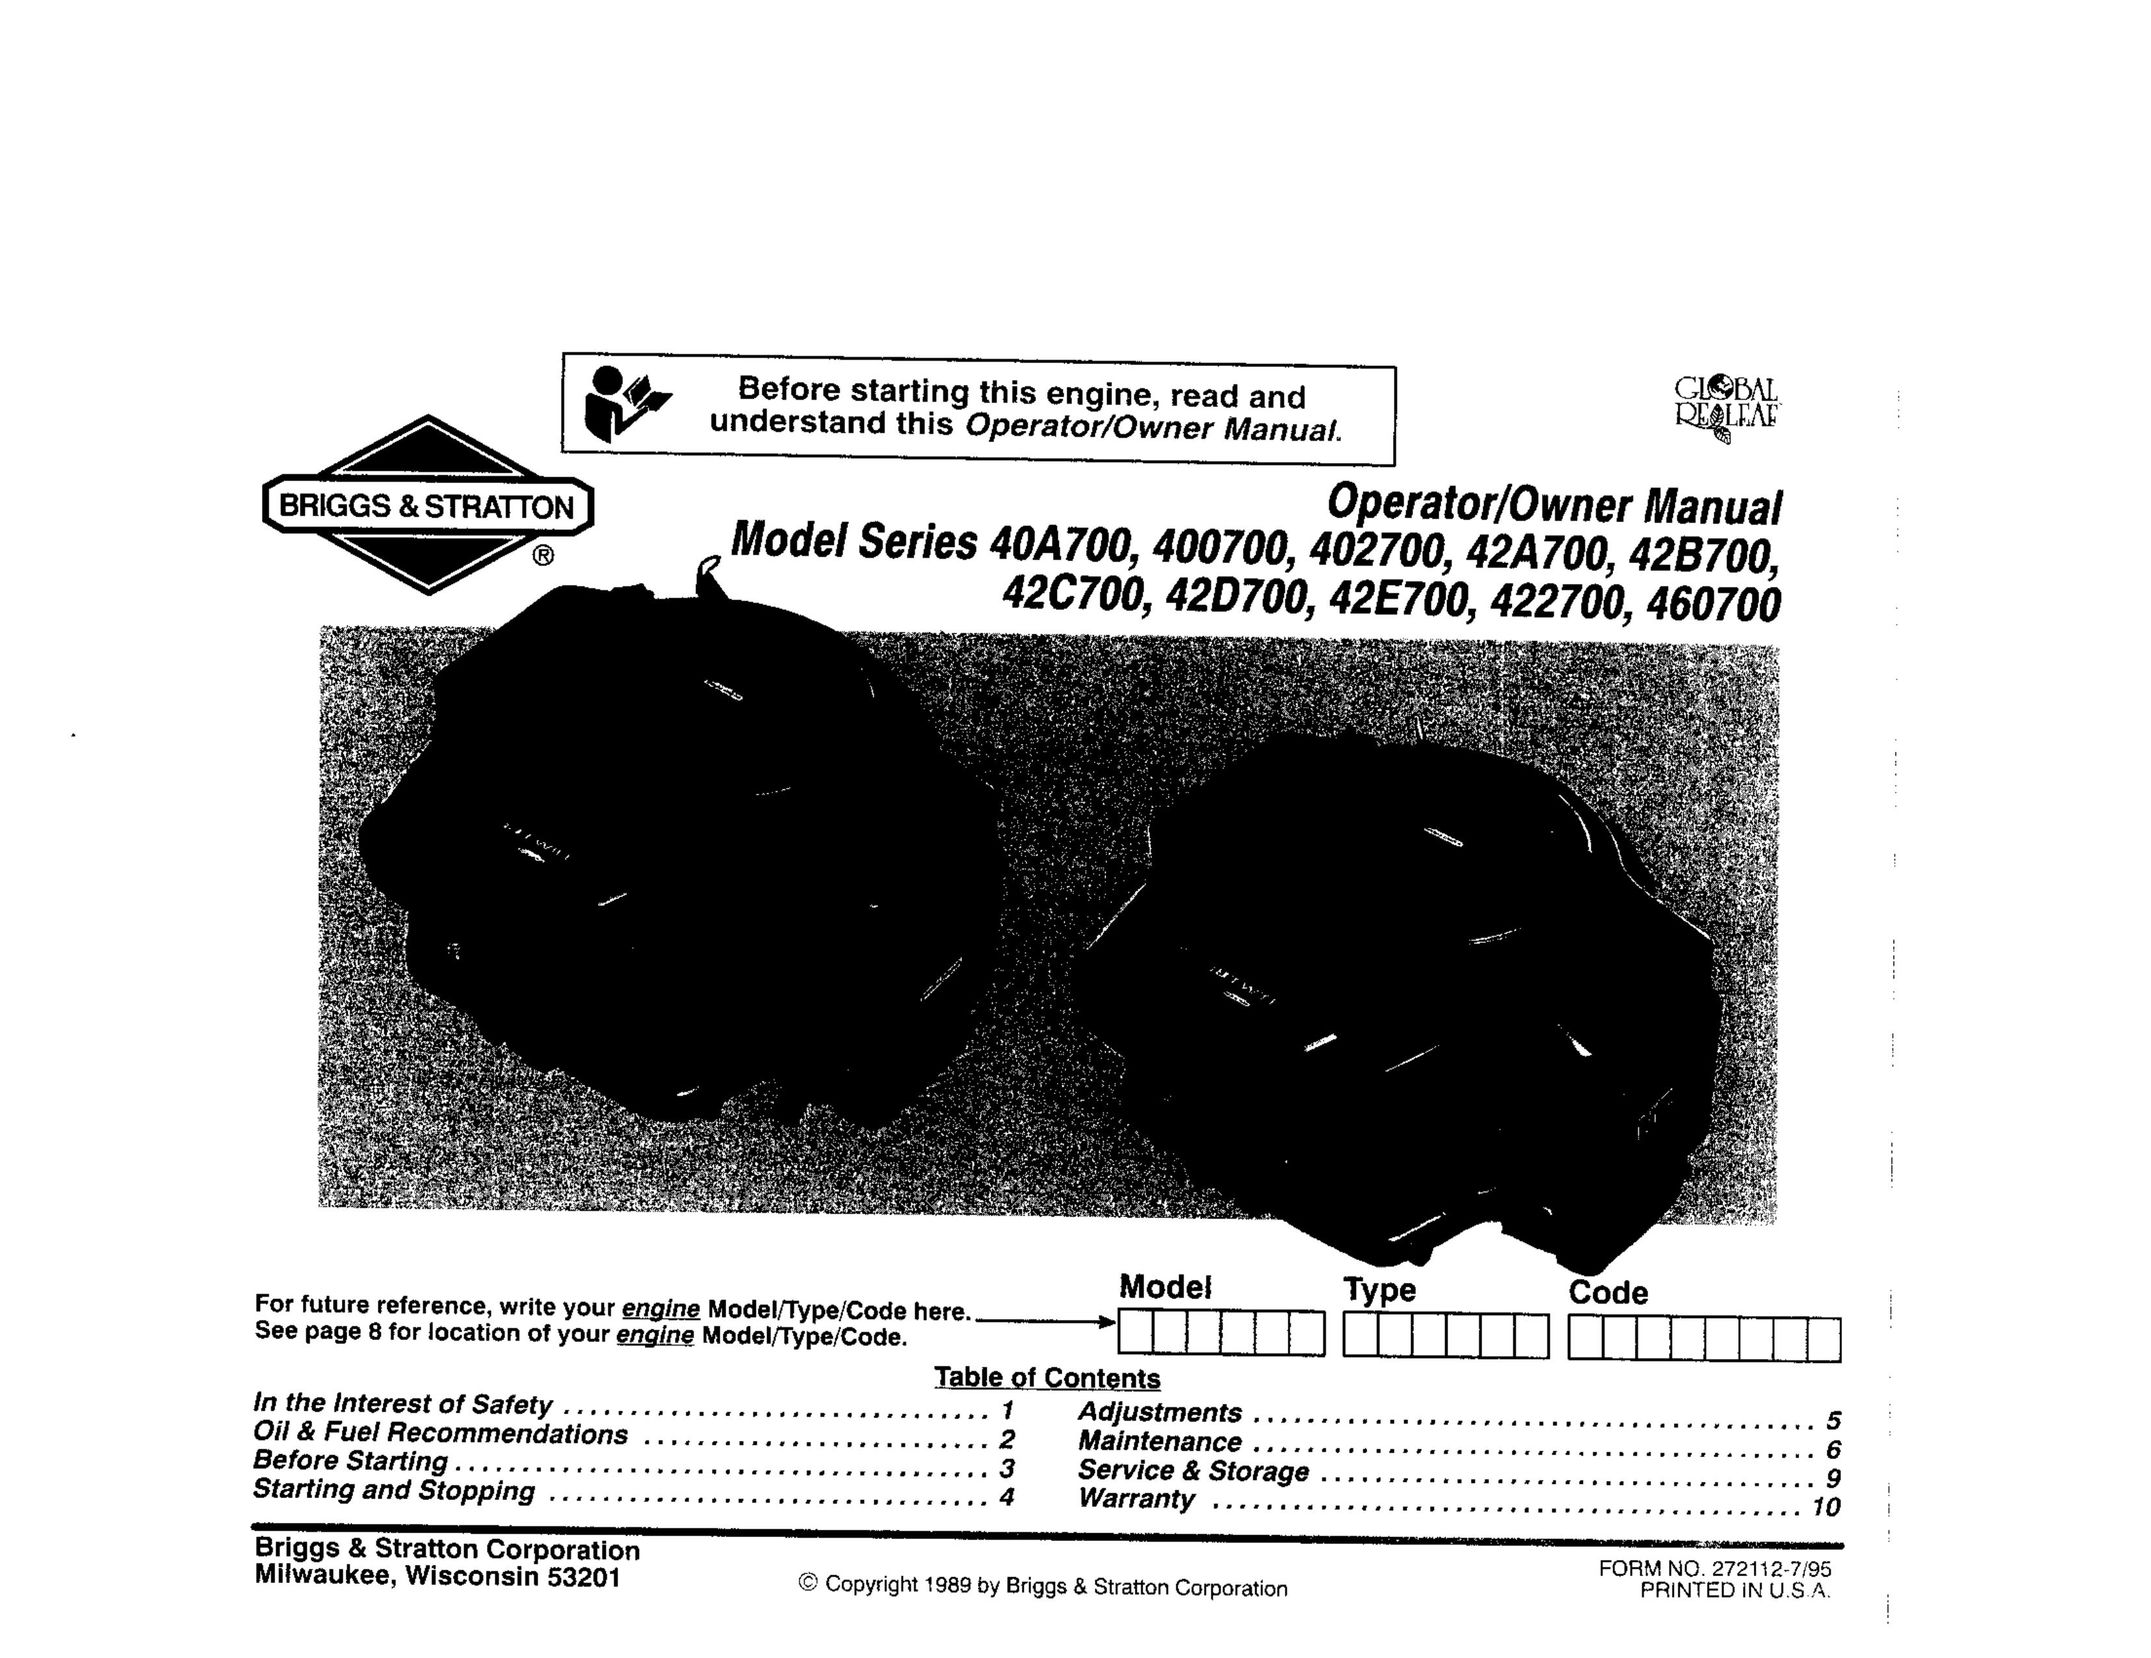 Briggs & Stratton 422700 Welder User Manual